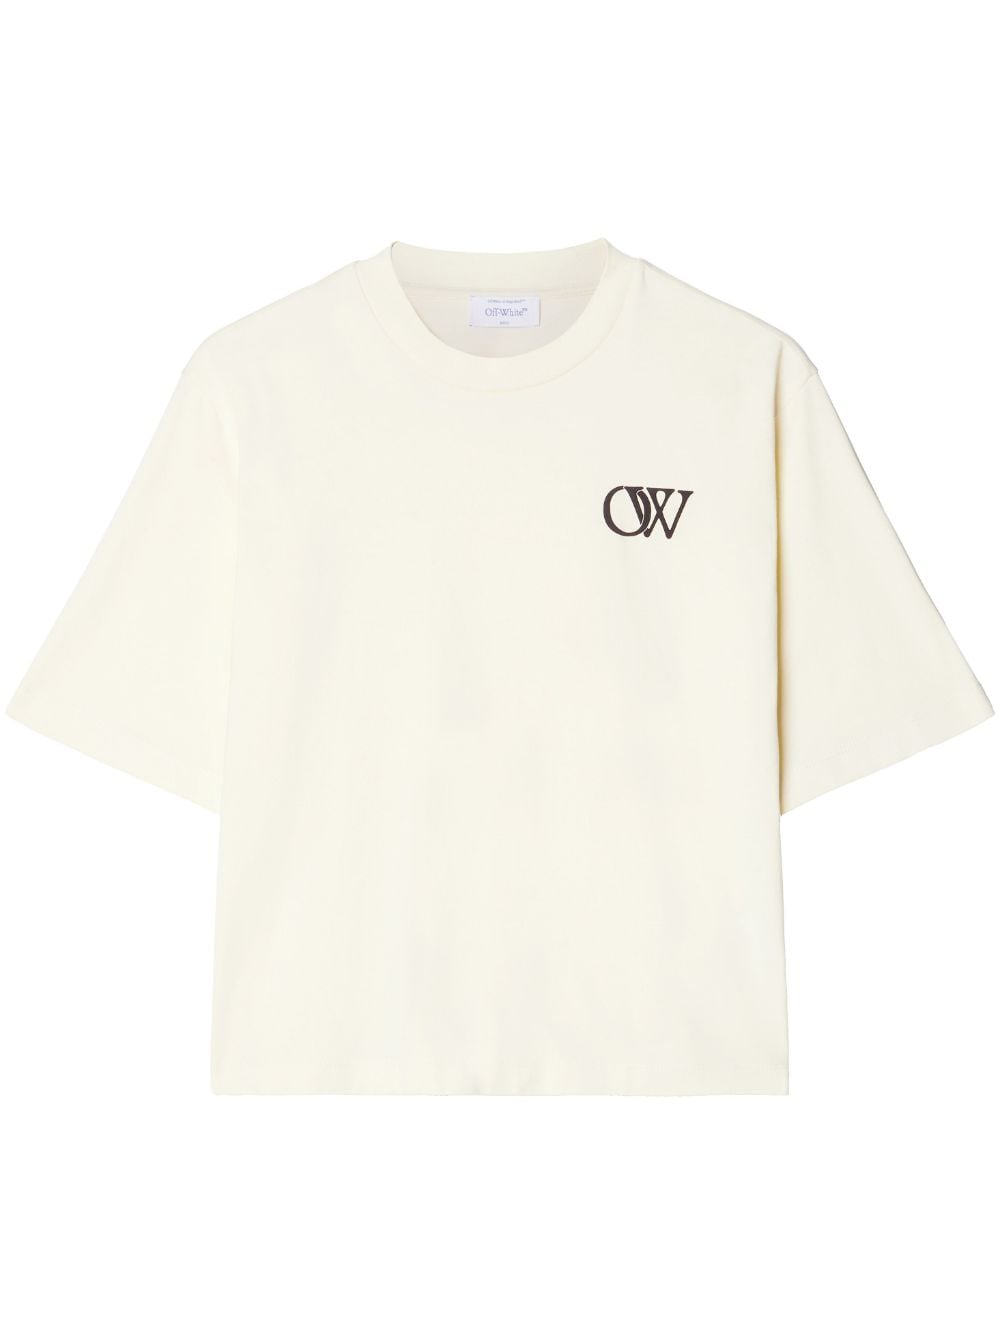 Off-White OW-print cotton T-shirt von Off-White